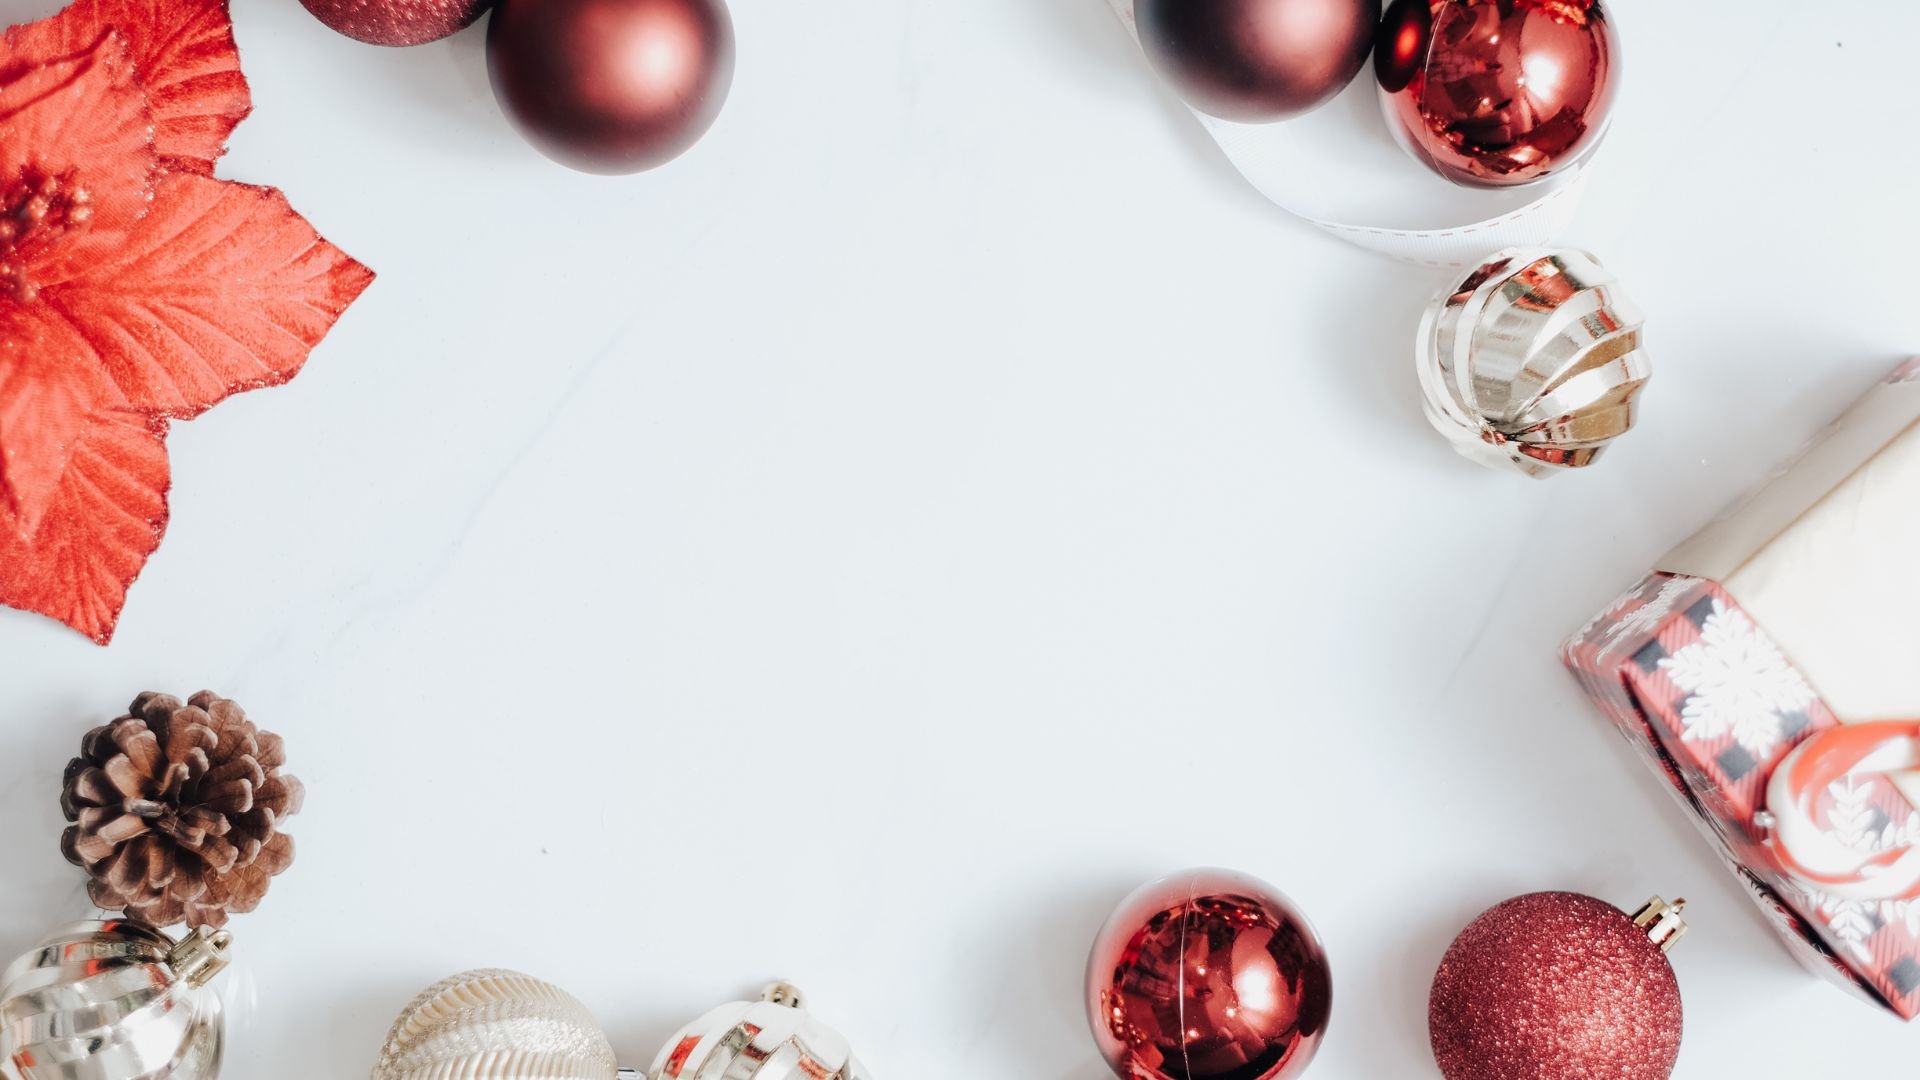 Imagem de fundo branco, com uma moldura feita de elementos natalinos como: flor e bolas vermelhas e douradas, pinhas e caixa de presente.